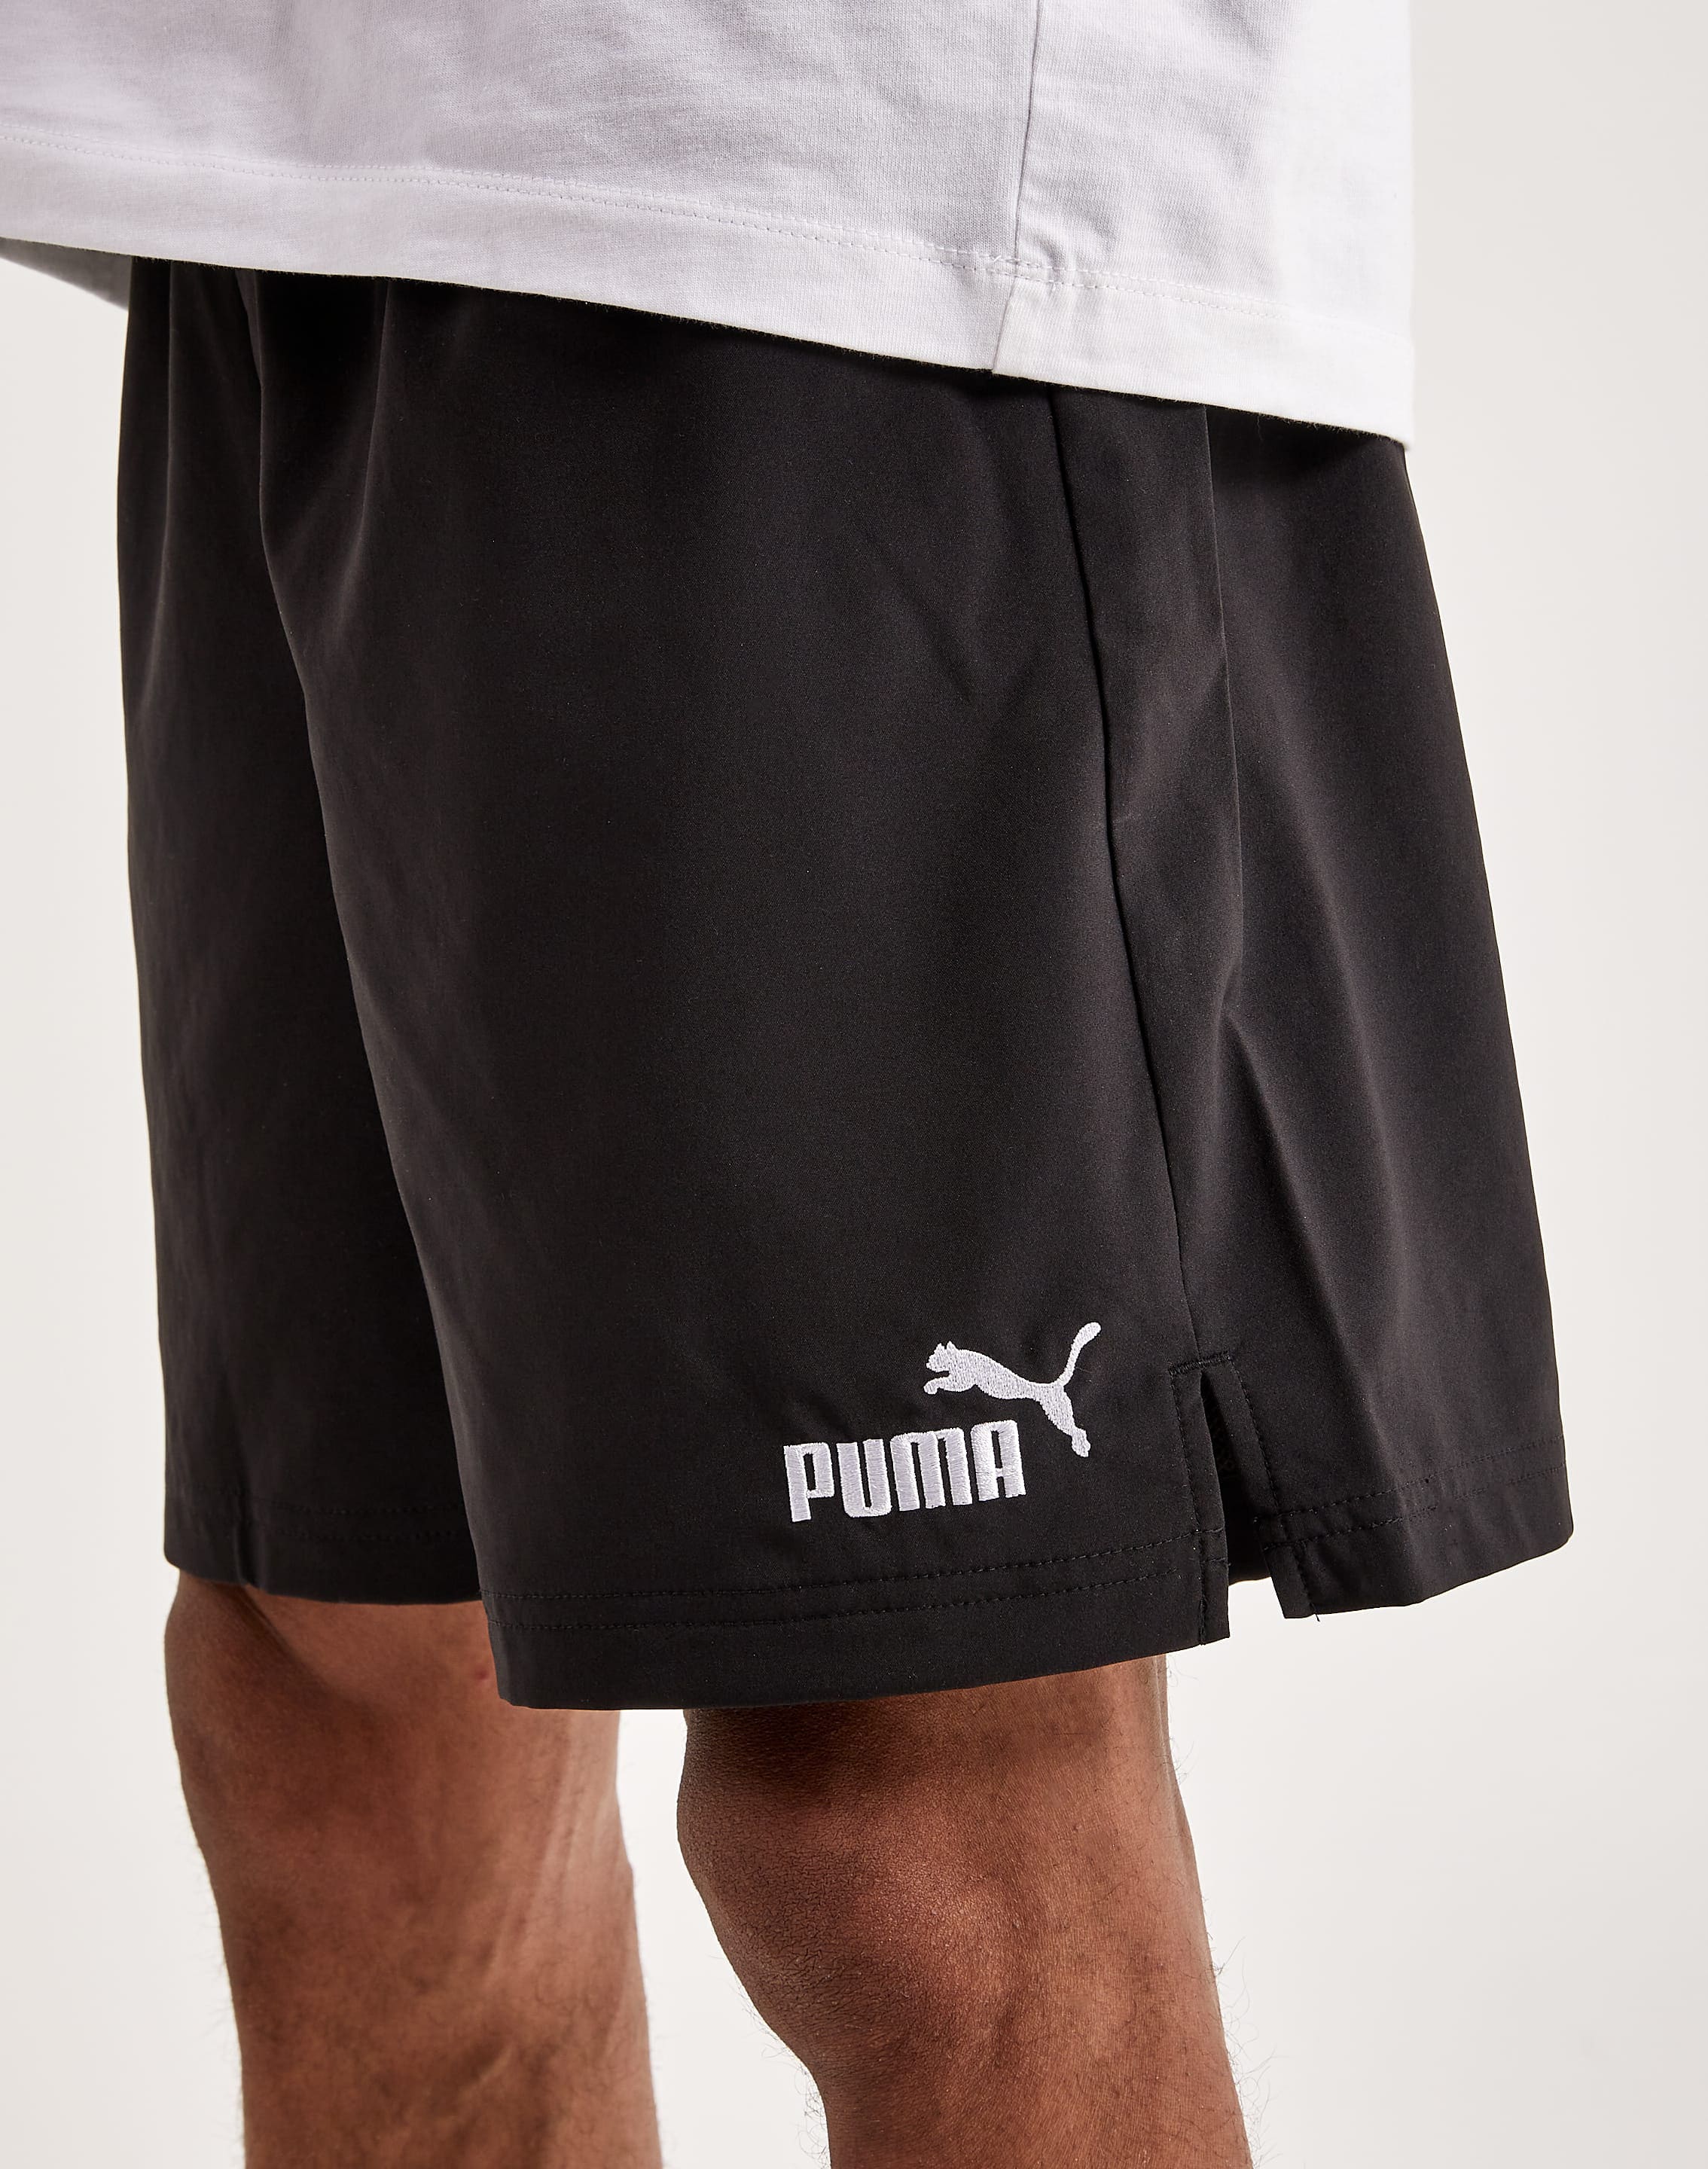 Woven – Shorts DTLR Essentials Puma